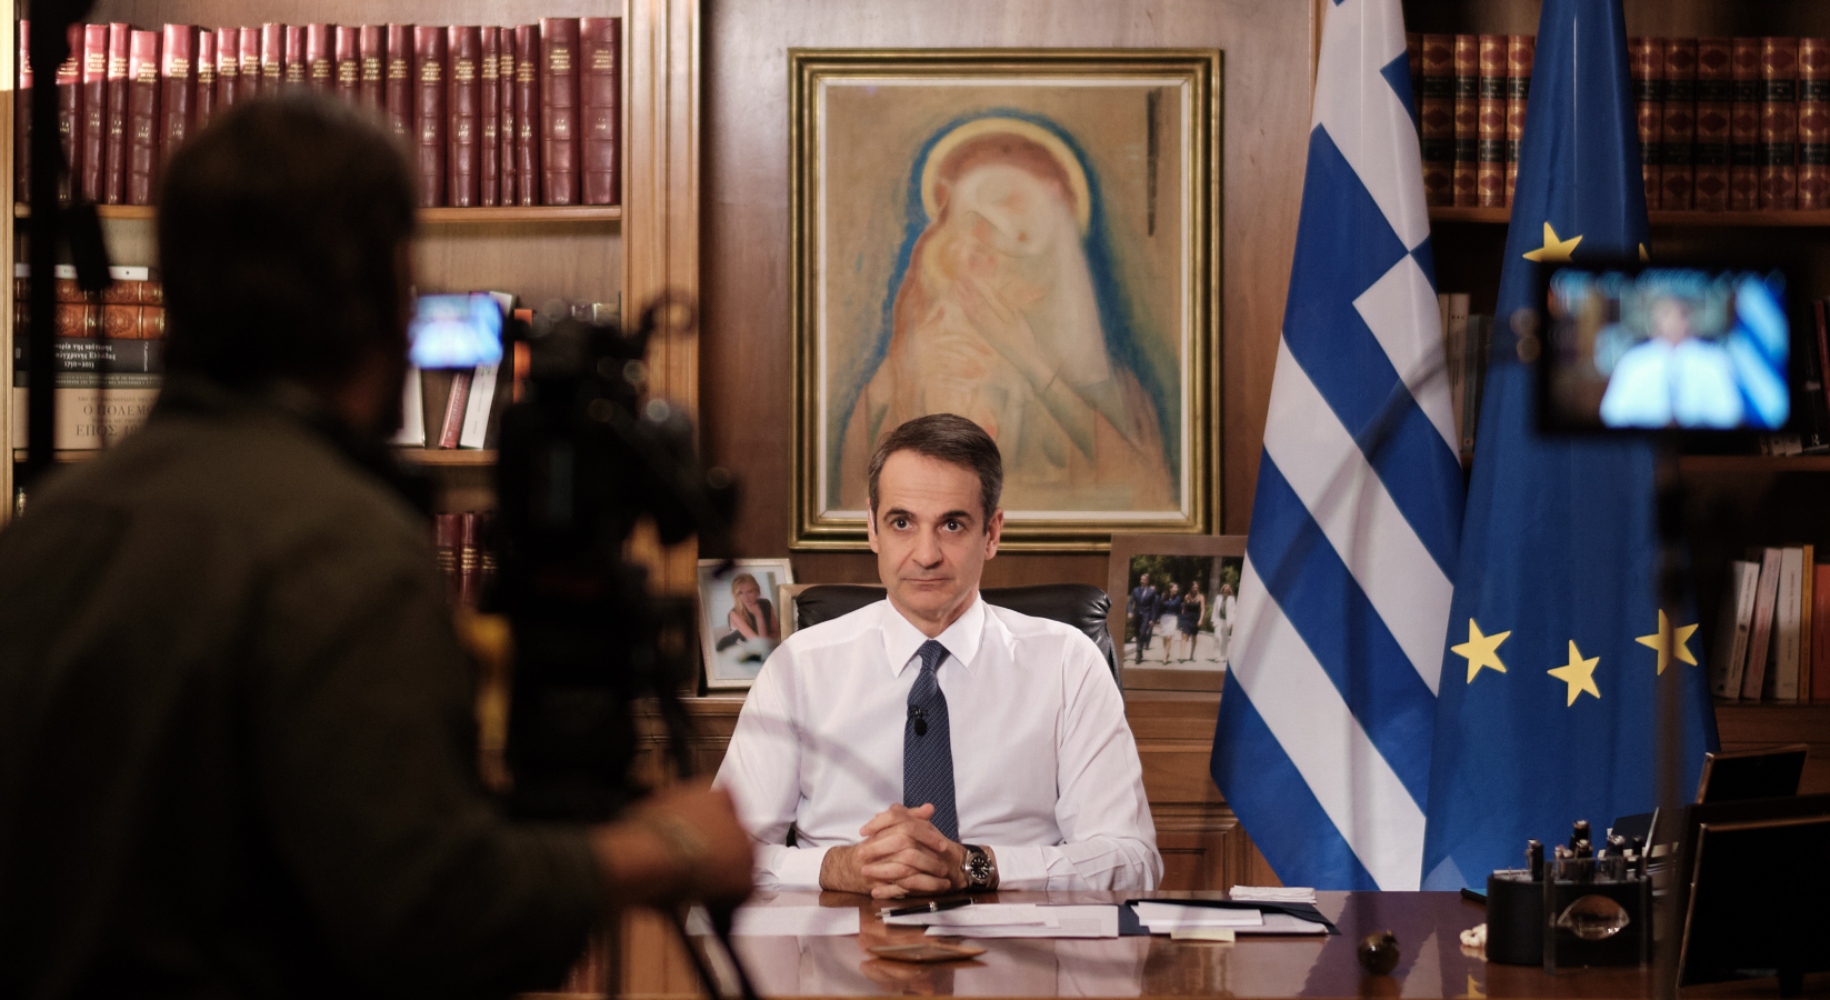 Διεθνής διασυρμός από τον Economist για την ελευθερία Τύπου στην Ελλάδα